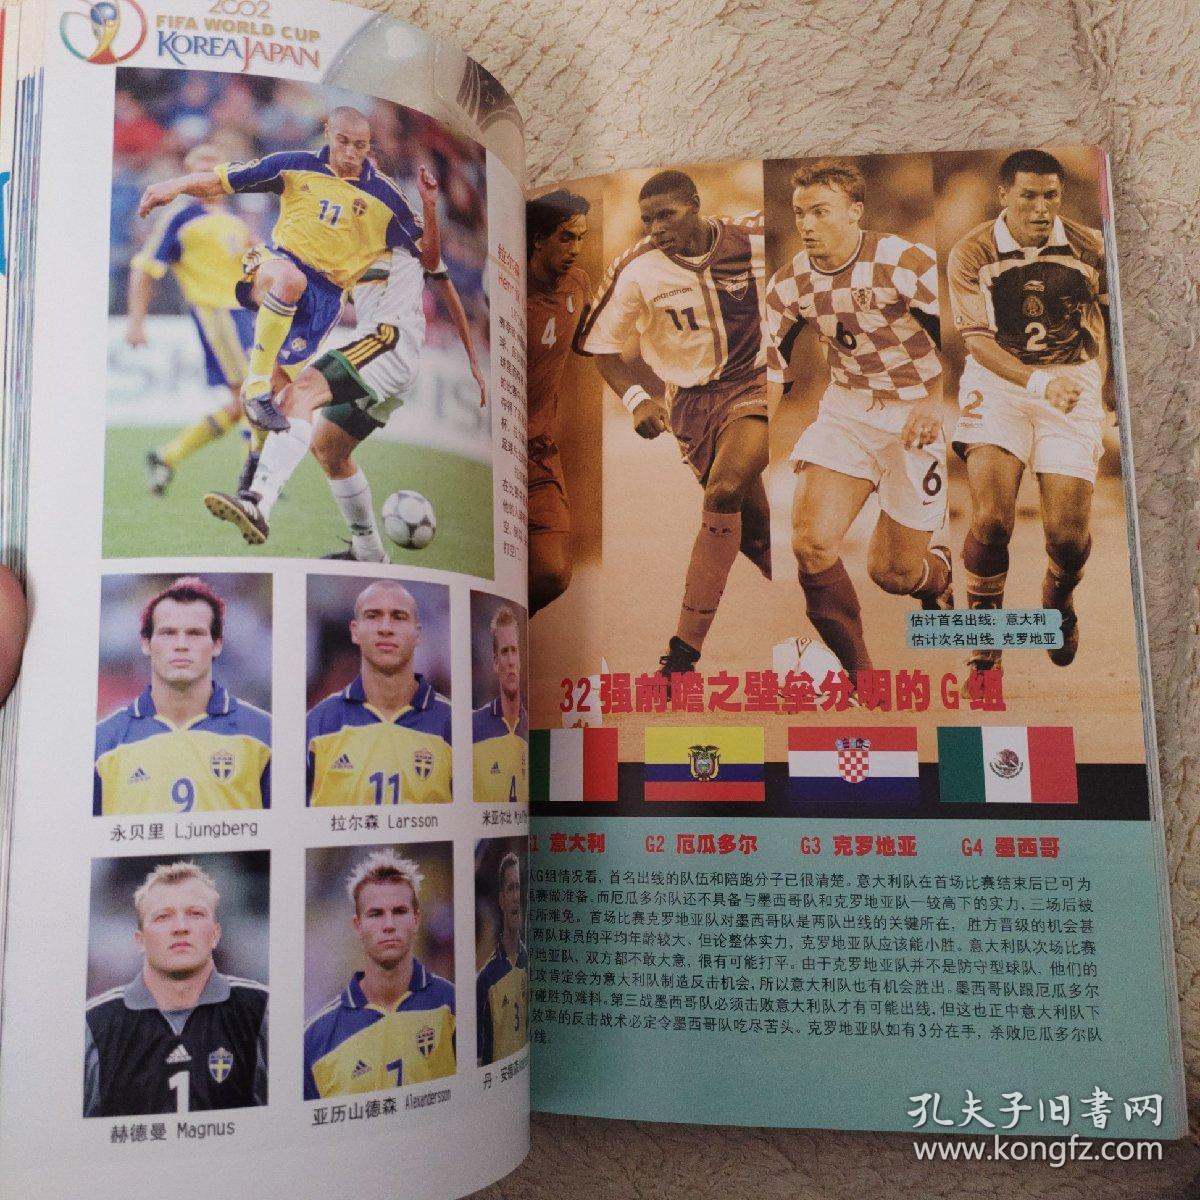 2002世界杯列强专集.东瀛战区